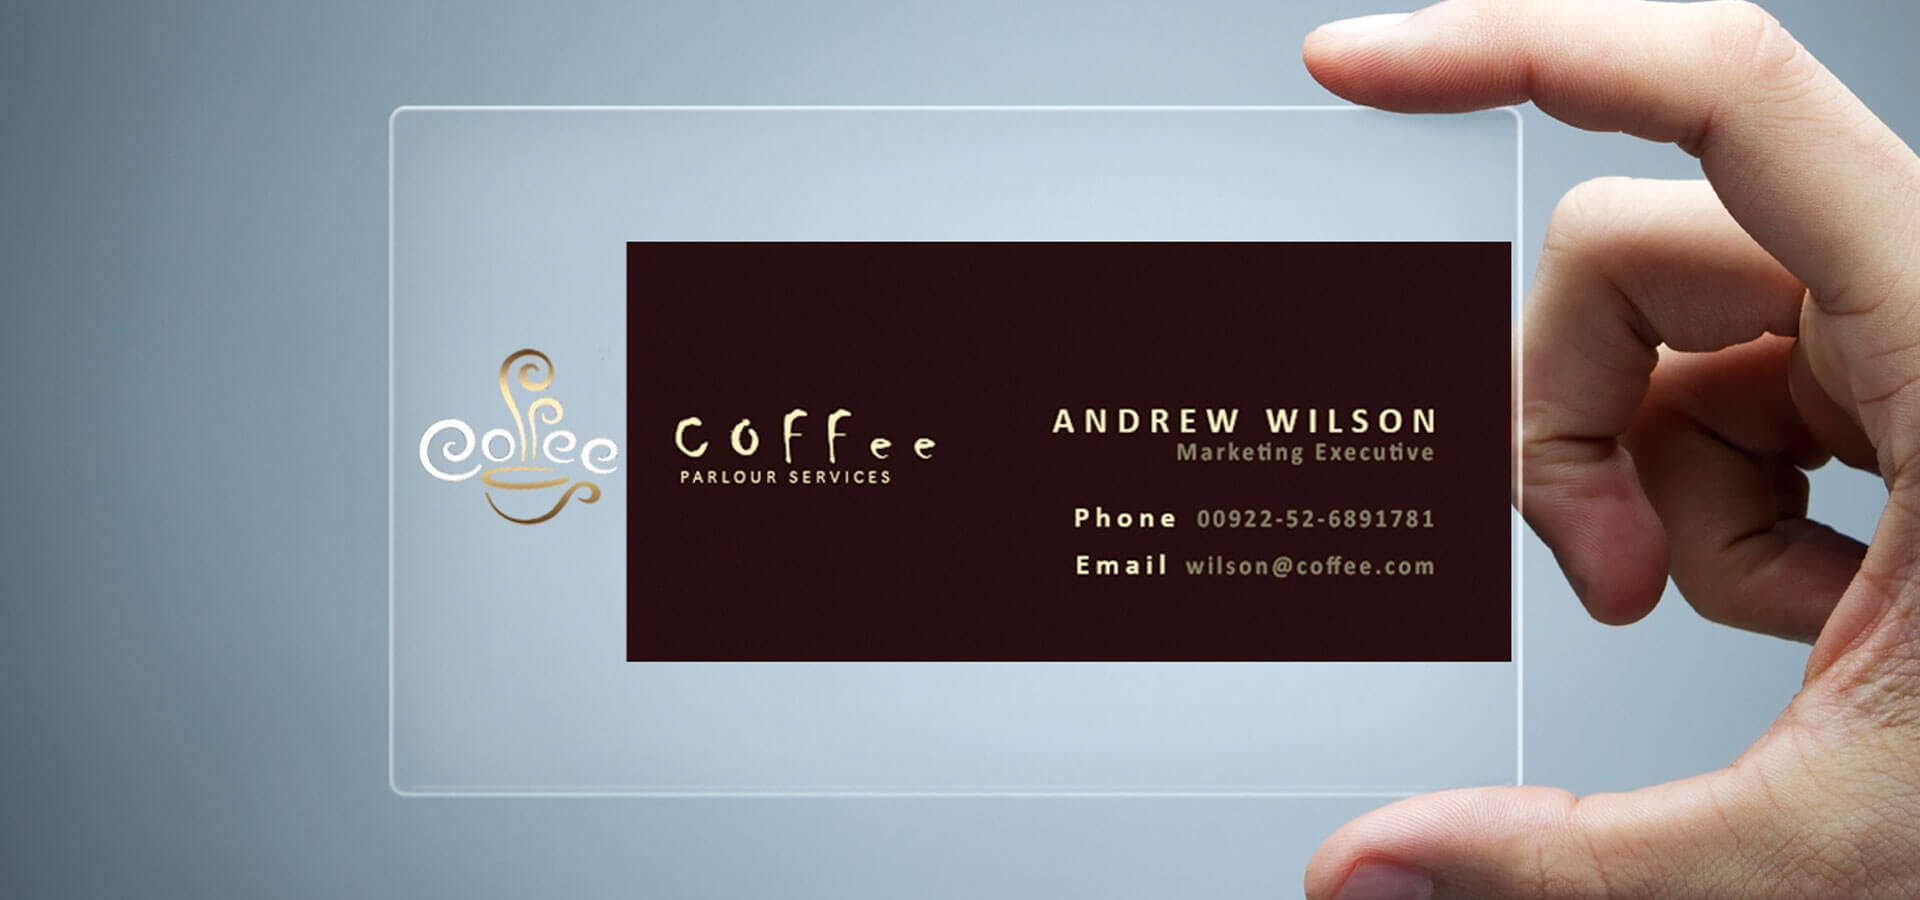 26+ Transparent Business Card Templates – Illustrator, Ms In Coffee Business Card Template Free